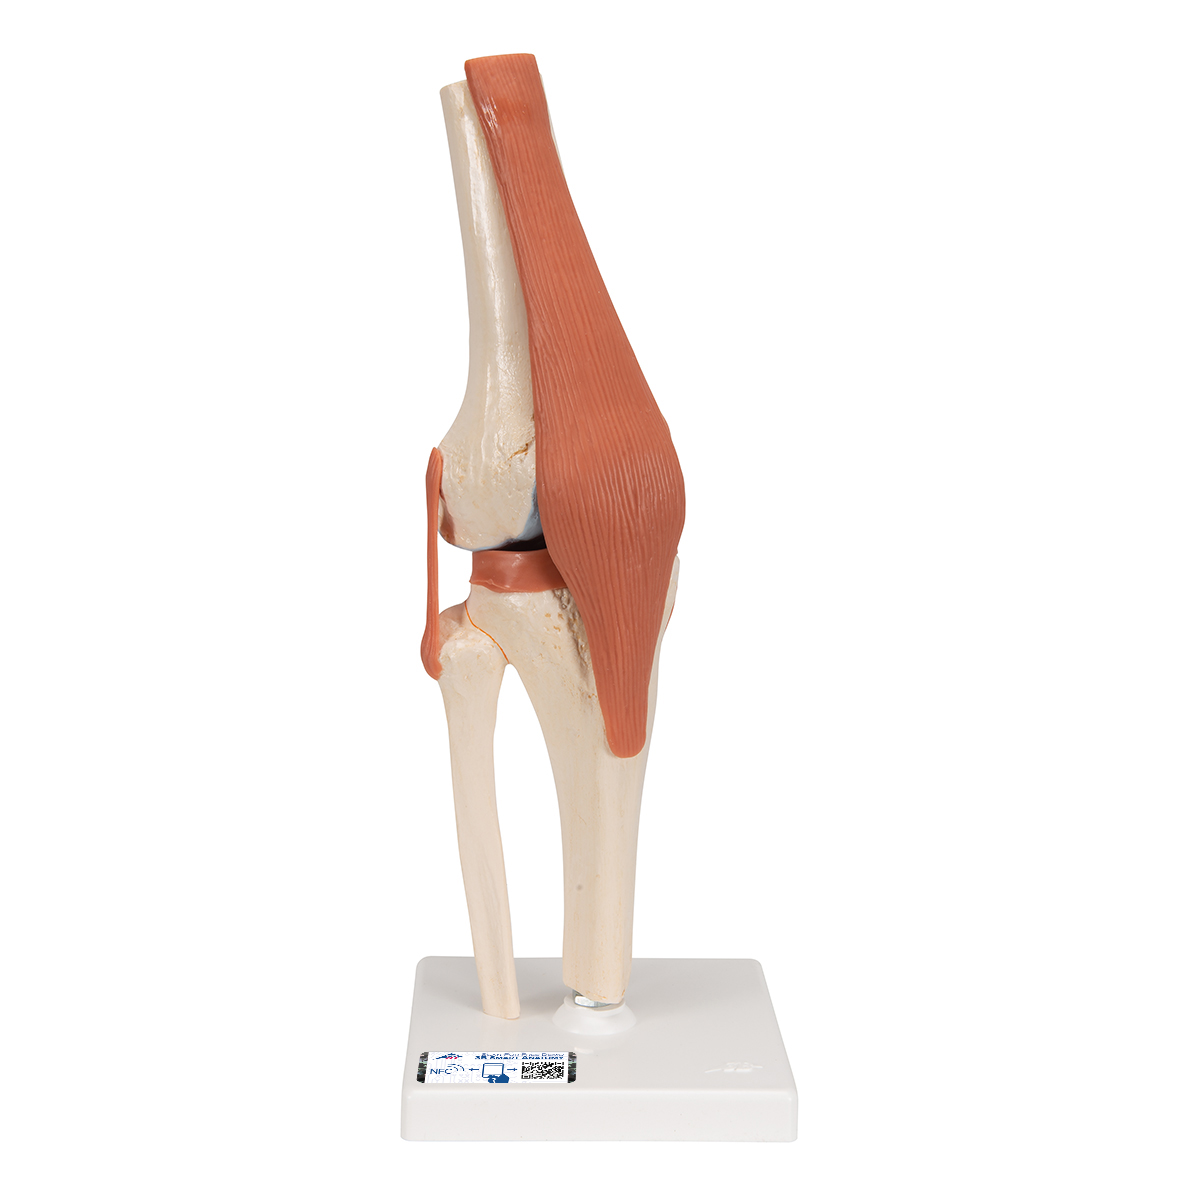 Funktionales Kniegelenkmodell "Luxus" mit Bändern - 3B Smart Anatomy, Bestellnummer 1000164, A82/1, 3B Scientific